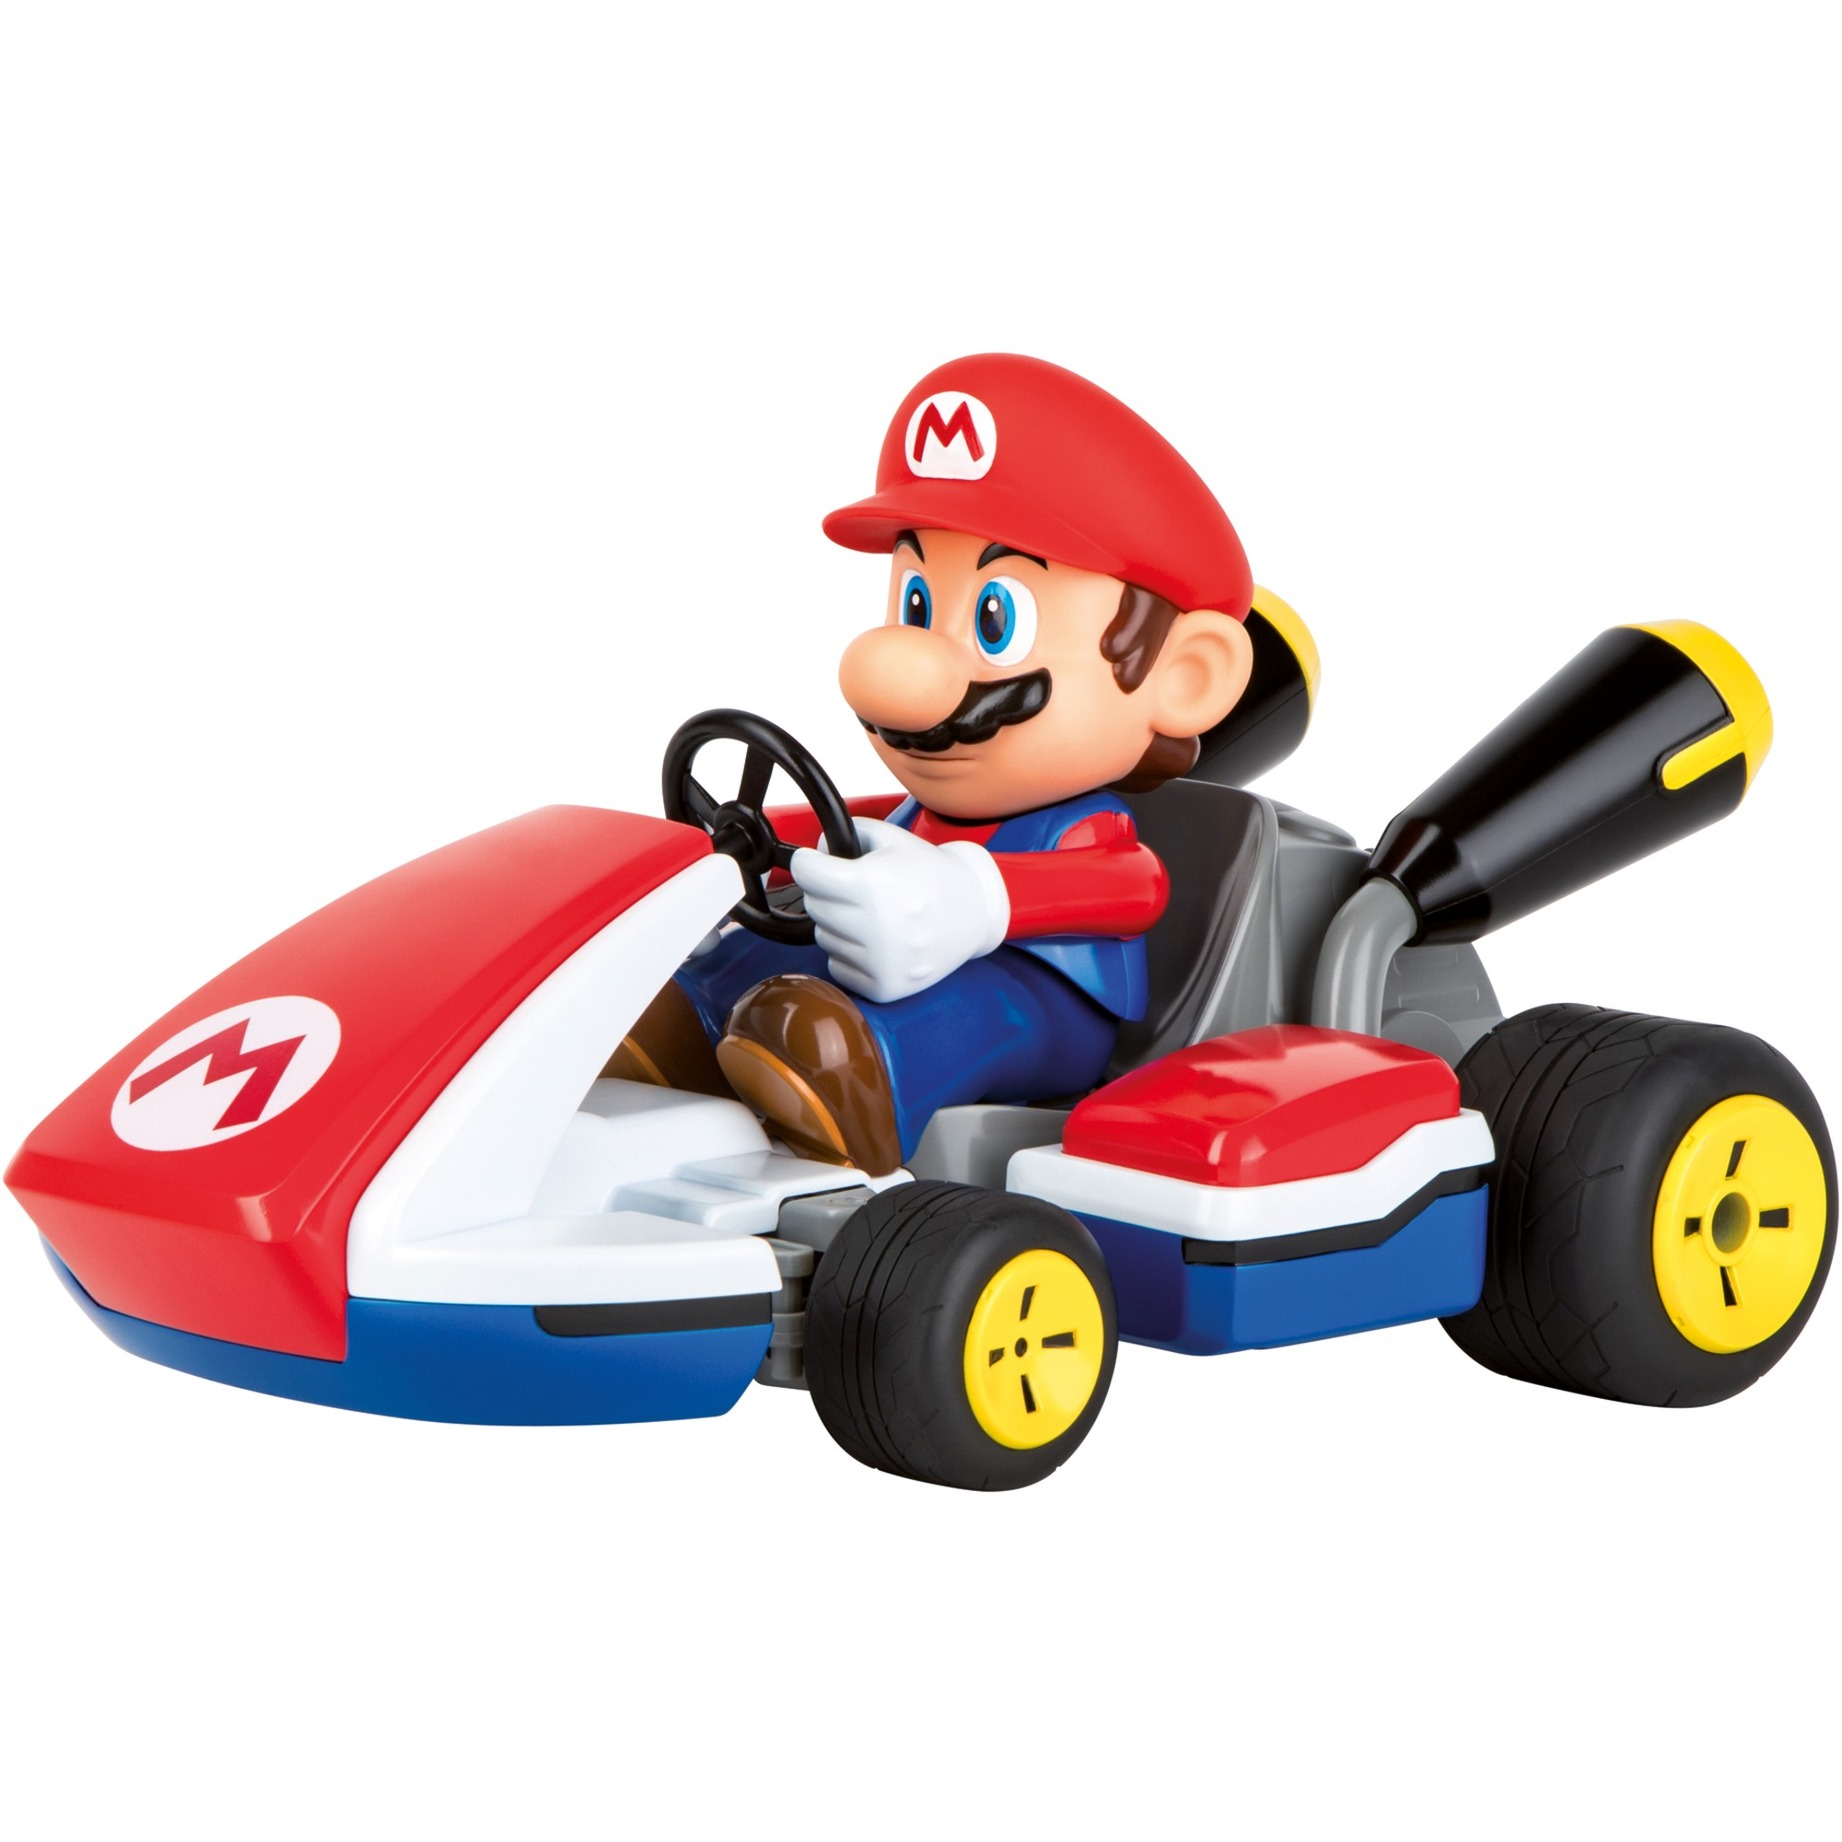 RC Mario Kart - Mario Race Kart mit Sound von Carrera